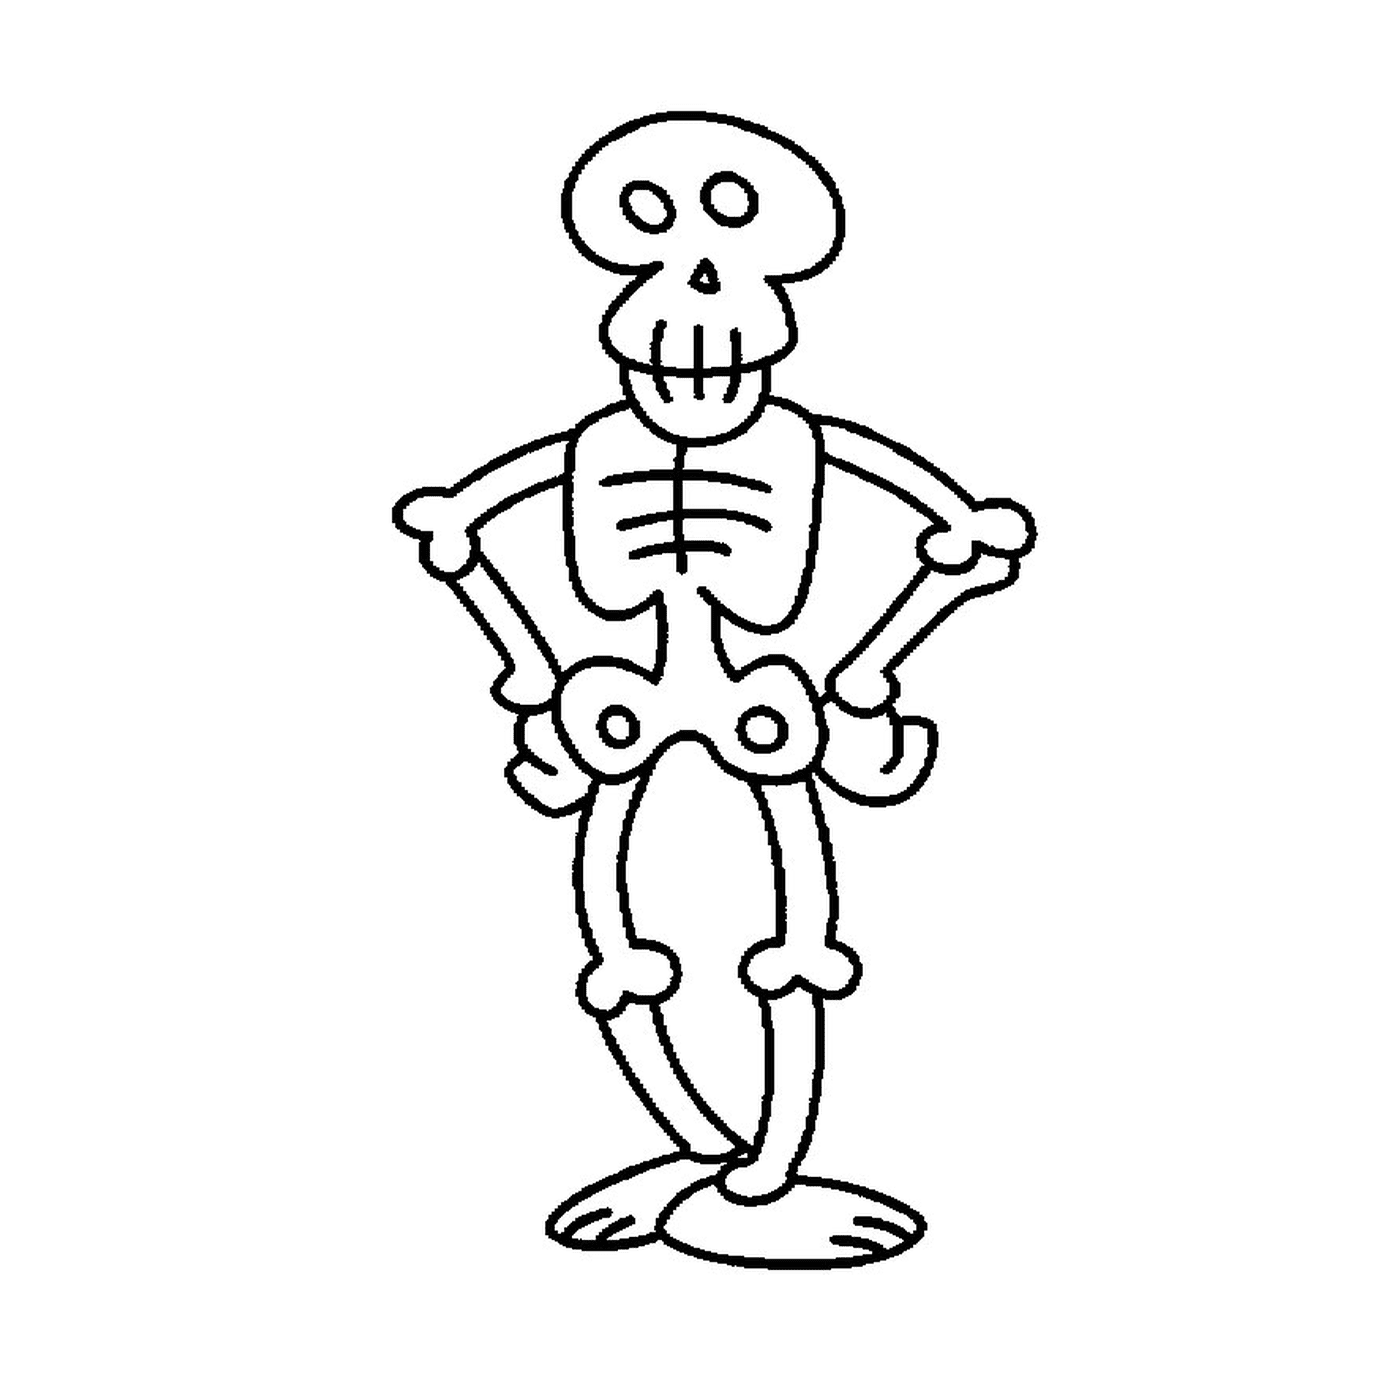  Esqueleto divertido dos desenhos animados 